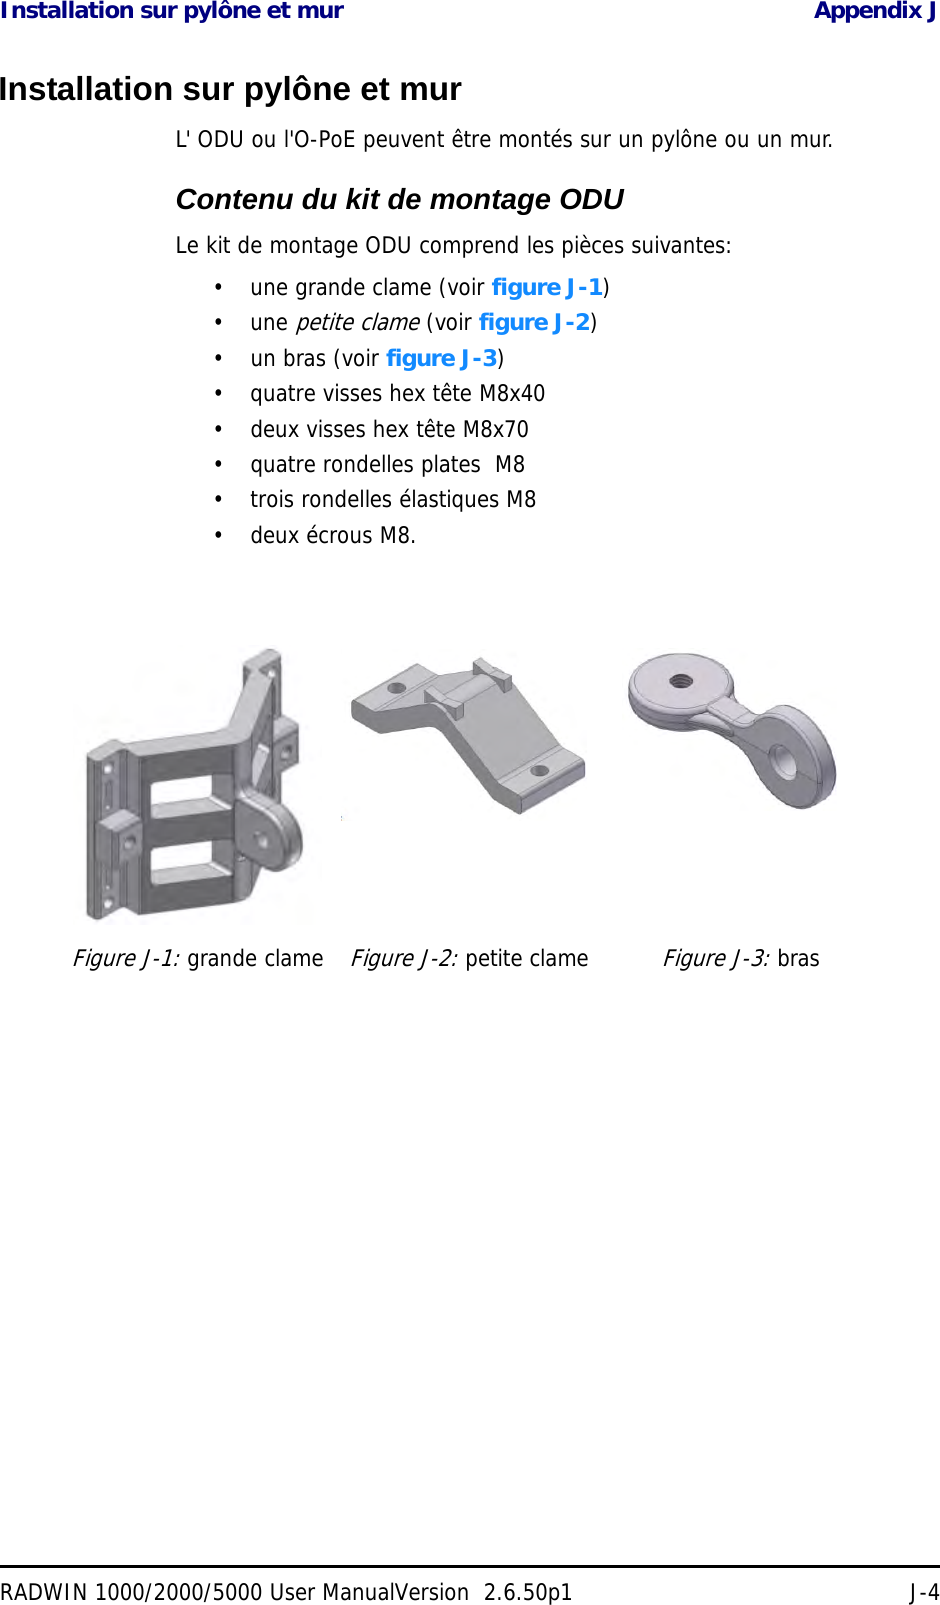 Installation sur pylône et mur Appendix JRADWIN 1000/2000/5000 User ManualVersion  2.6.50p1 J-4Installation sur pylône et murL&apos; ODU ou l&apos;O-PoE peuvent être montés sur un pylône ou un mur.Contenu du kit de montage ODULe kit de montage ODU comprend les pièces suivantes:• une grande clame (voir figure J-1)• une petite clame (voir figure J-2)• un bras (voir figure J-3)• quatre visses hex tête M8x40• deux visses hex tête M8x70• quatre rondelles plates  M8• trois rondelles élastiques M8• deux écrous M8.Figure J-1: grande clameFigure J-2: petite clameFigure J-3: bras